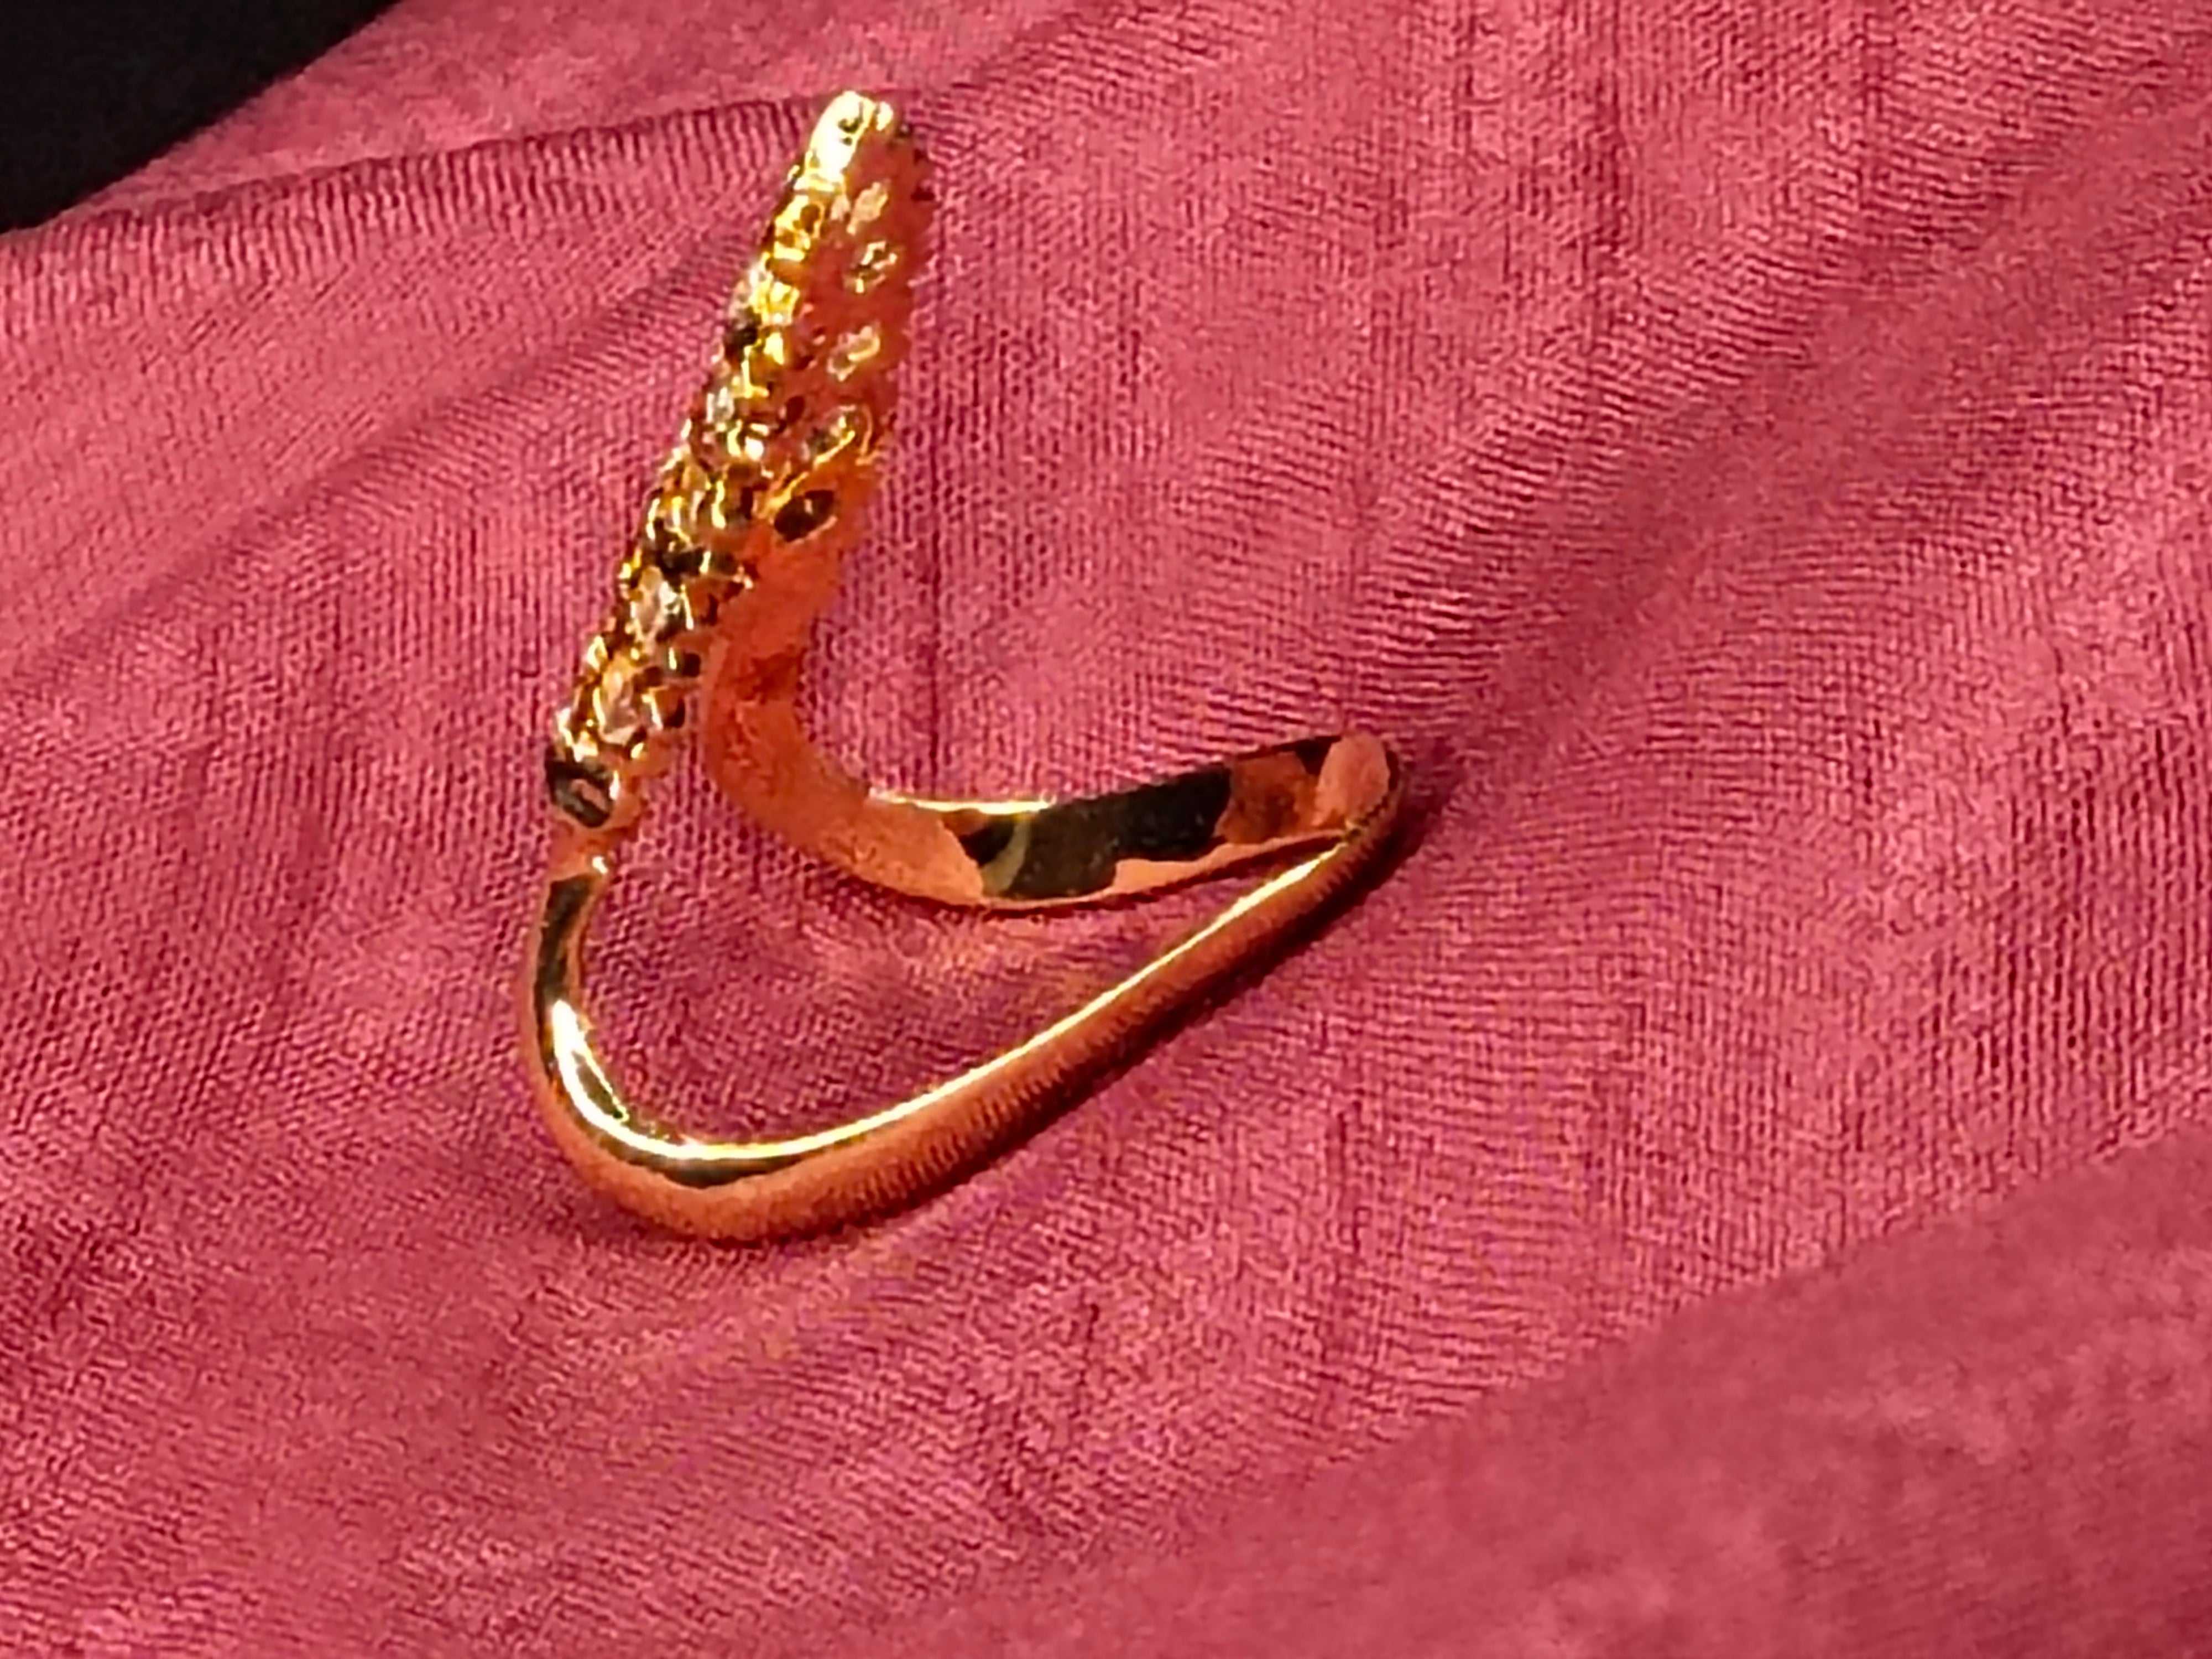 22K Gold Vanki Ring with Cz & Color Stones - 235-GVR431 in 4.800 Grams